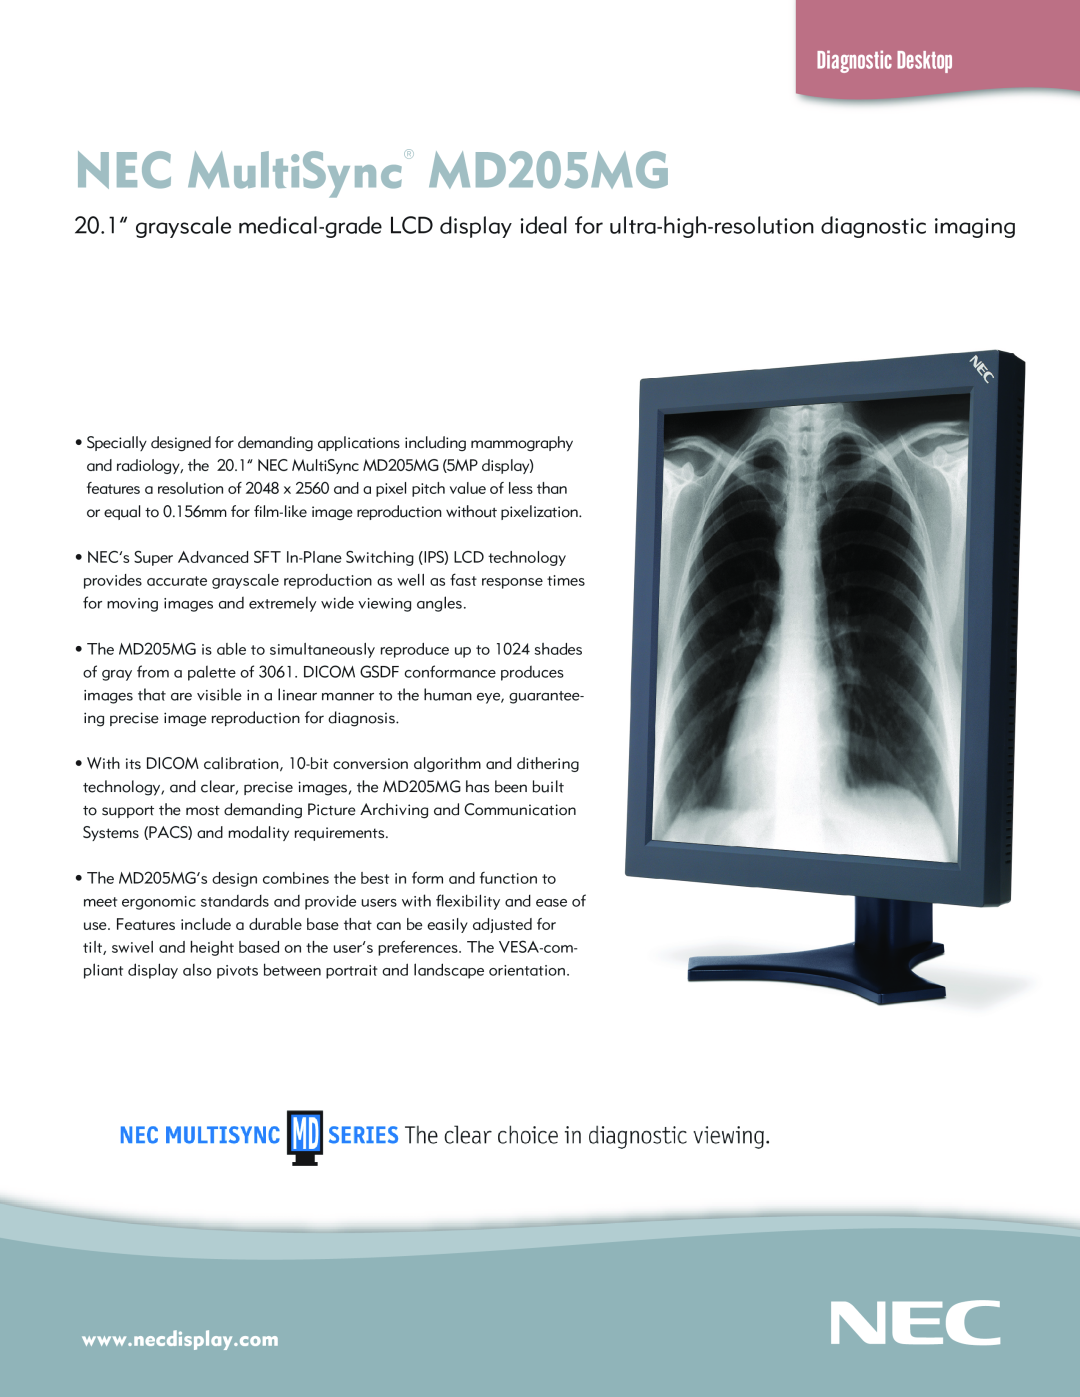 NEC manual NEC MultiSync MD205MG, Diagnostic Desktop 